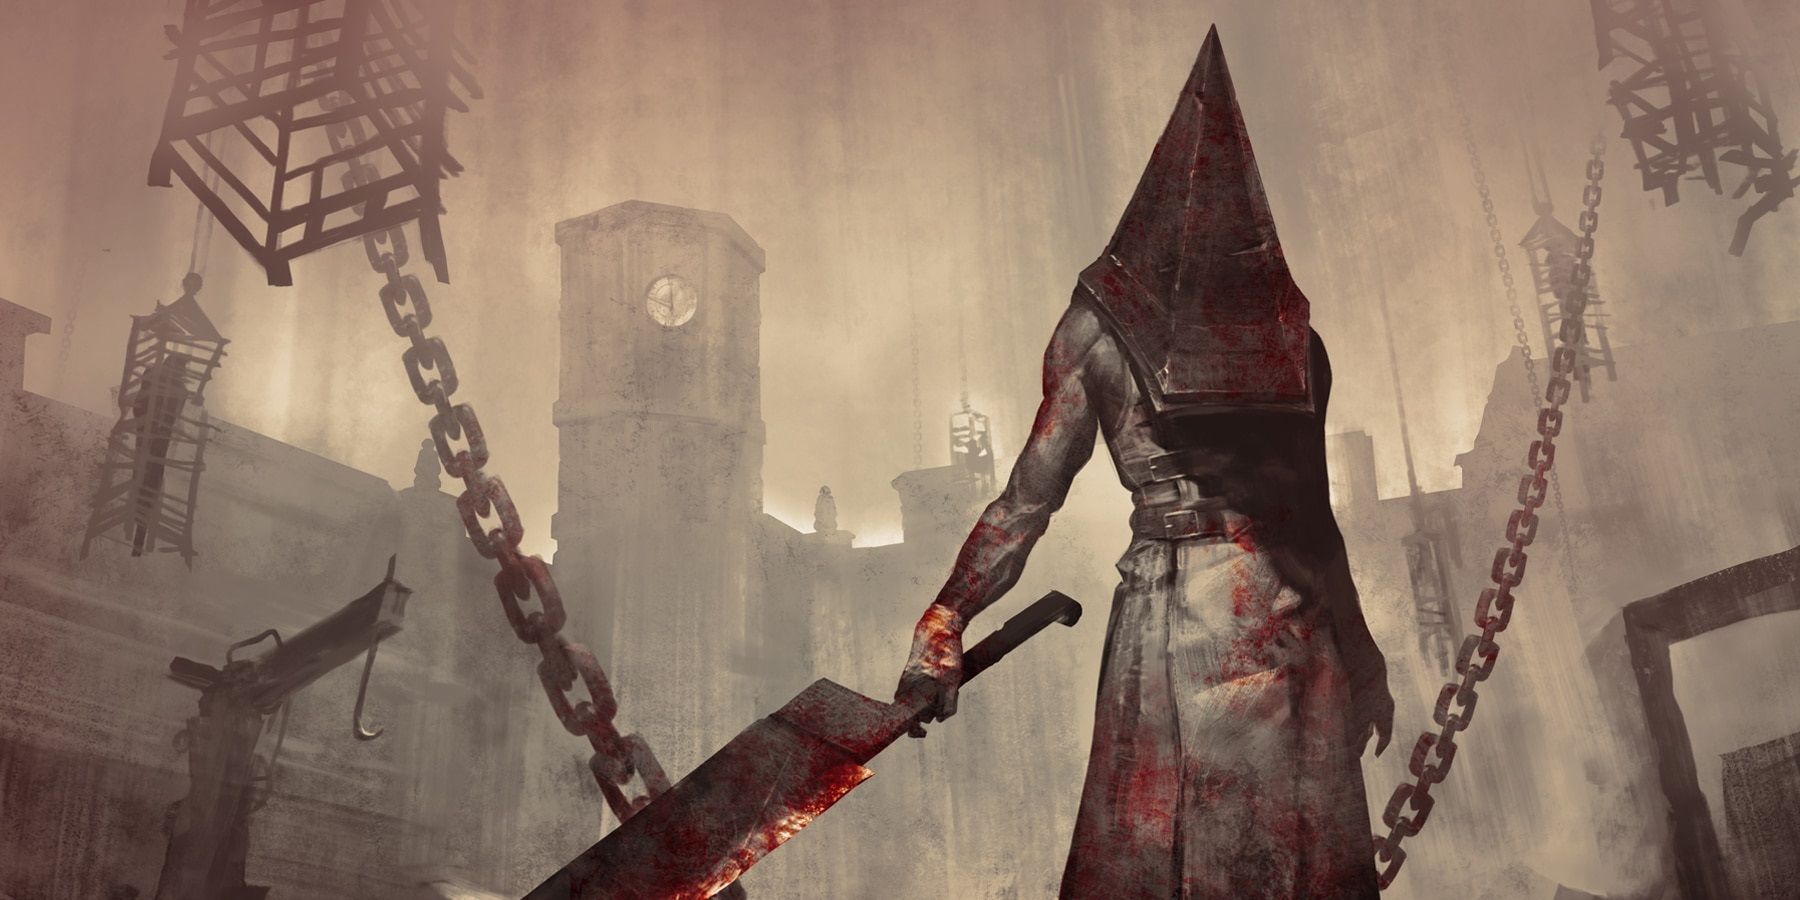 Povesť: Konami pracuje na nových hrách Silent Hill